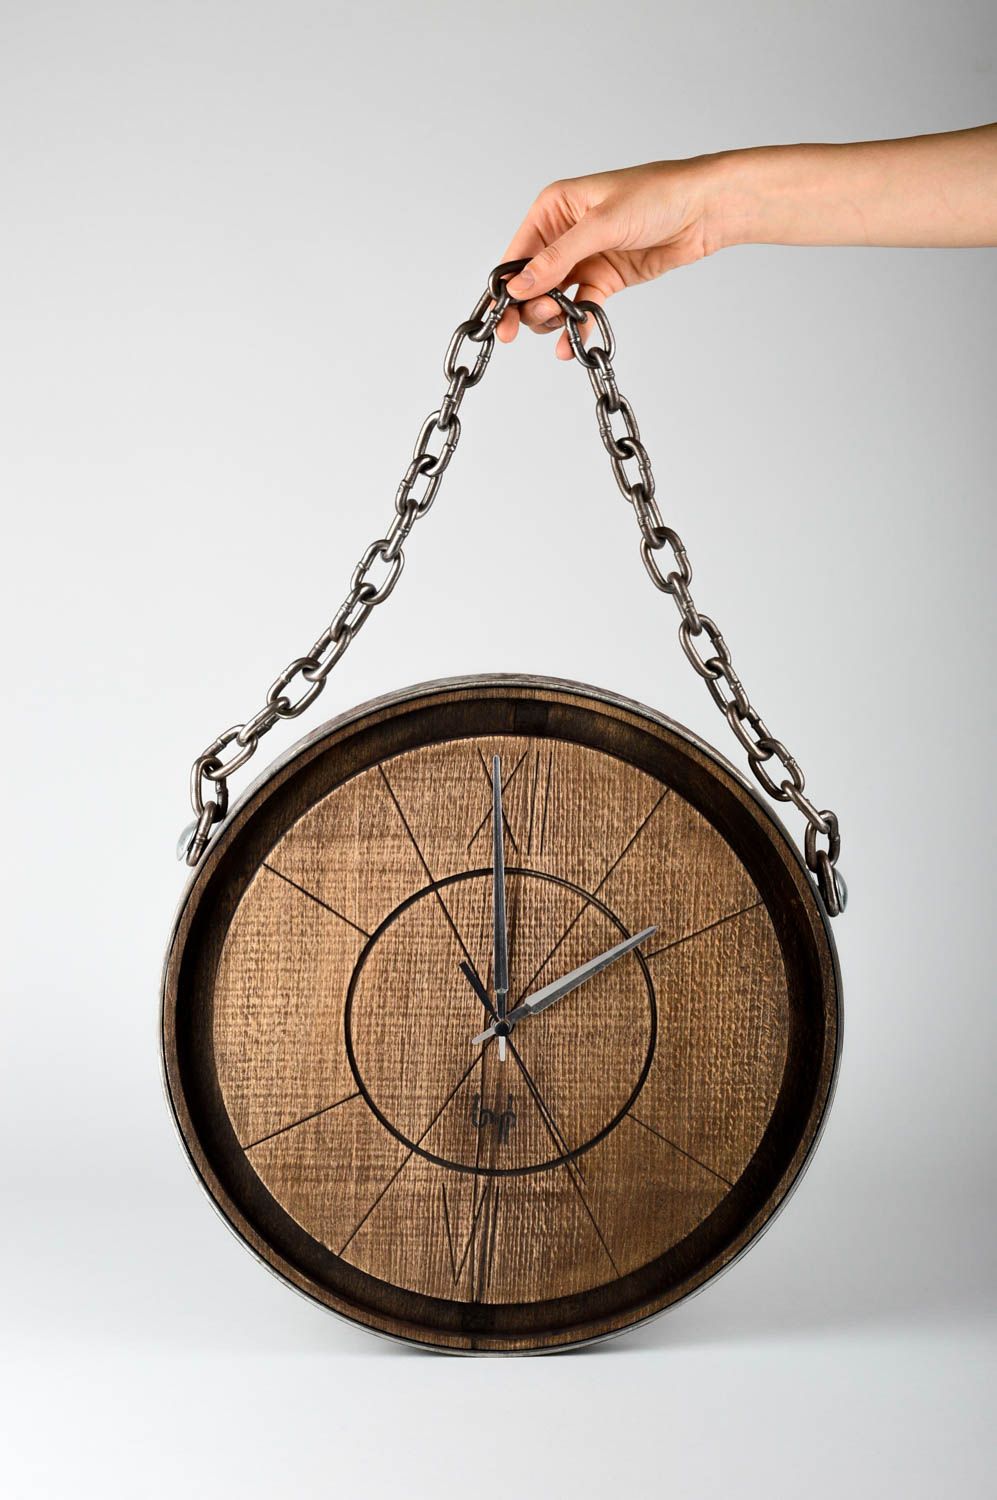 Необычные часы ручной работы деревянные часы настенные часы с металлом фото 1